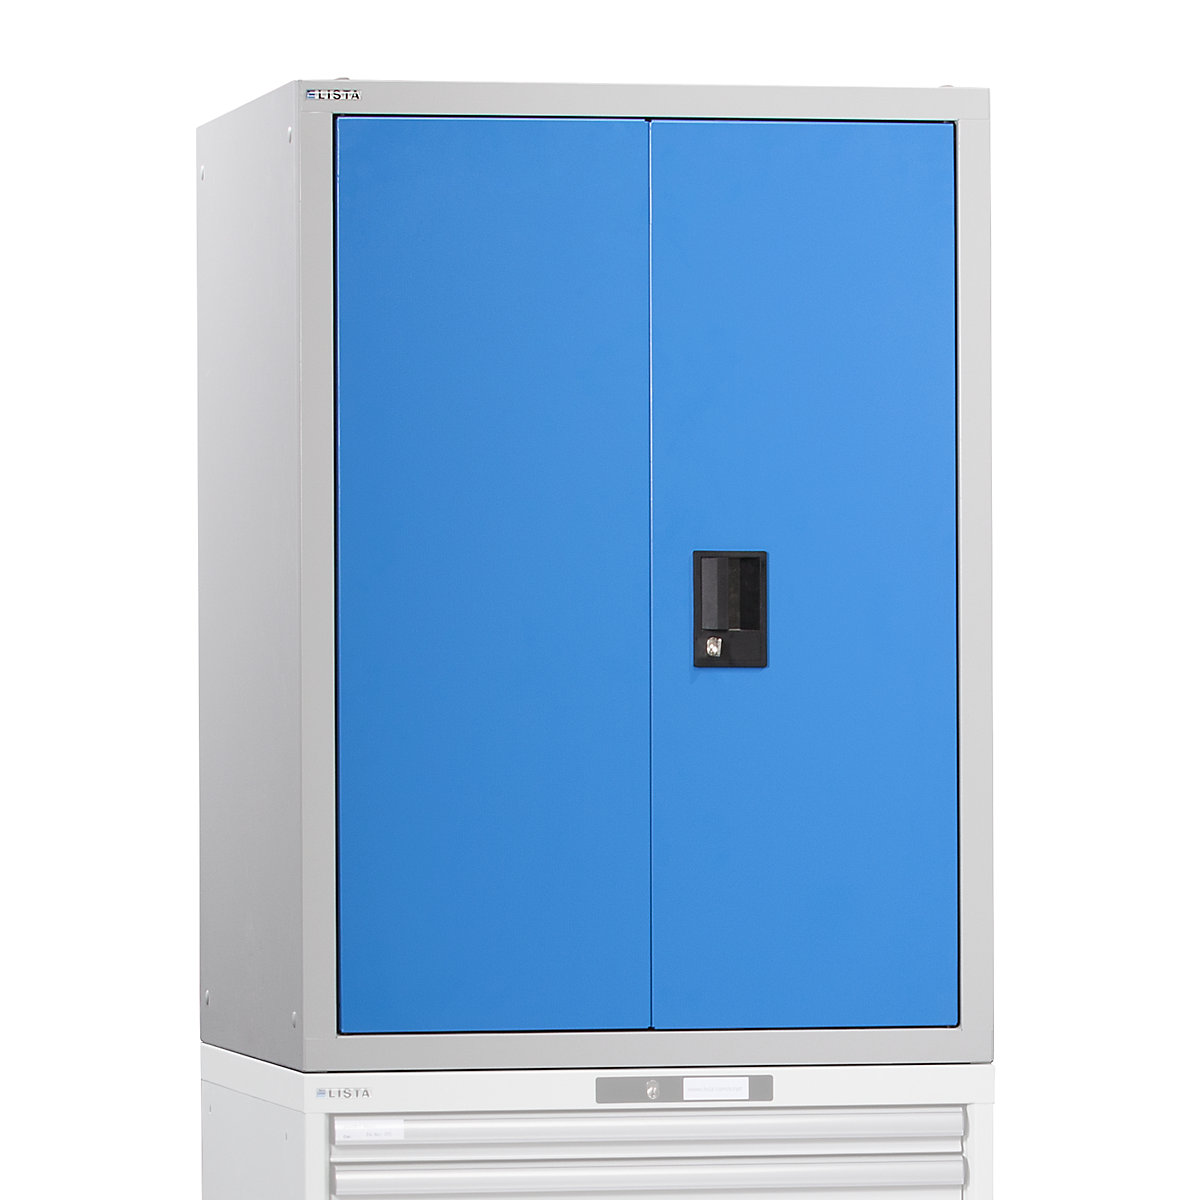 Vrhnja omarica s krilnimi vrati – LISTA, z vrati iz polne pločevine, VxŠxG 1000 x 717 x 725 mm, svetlo modra-6